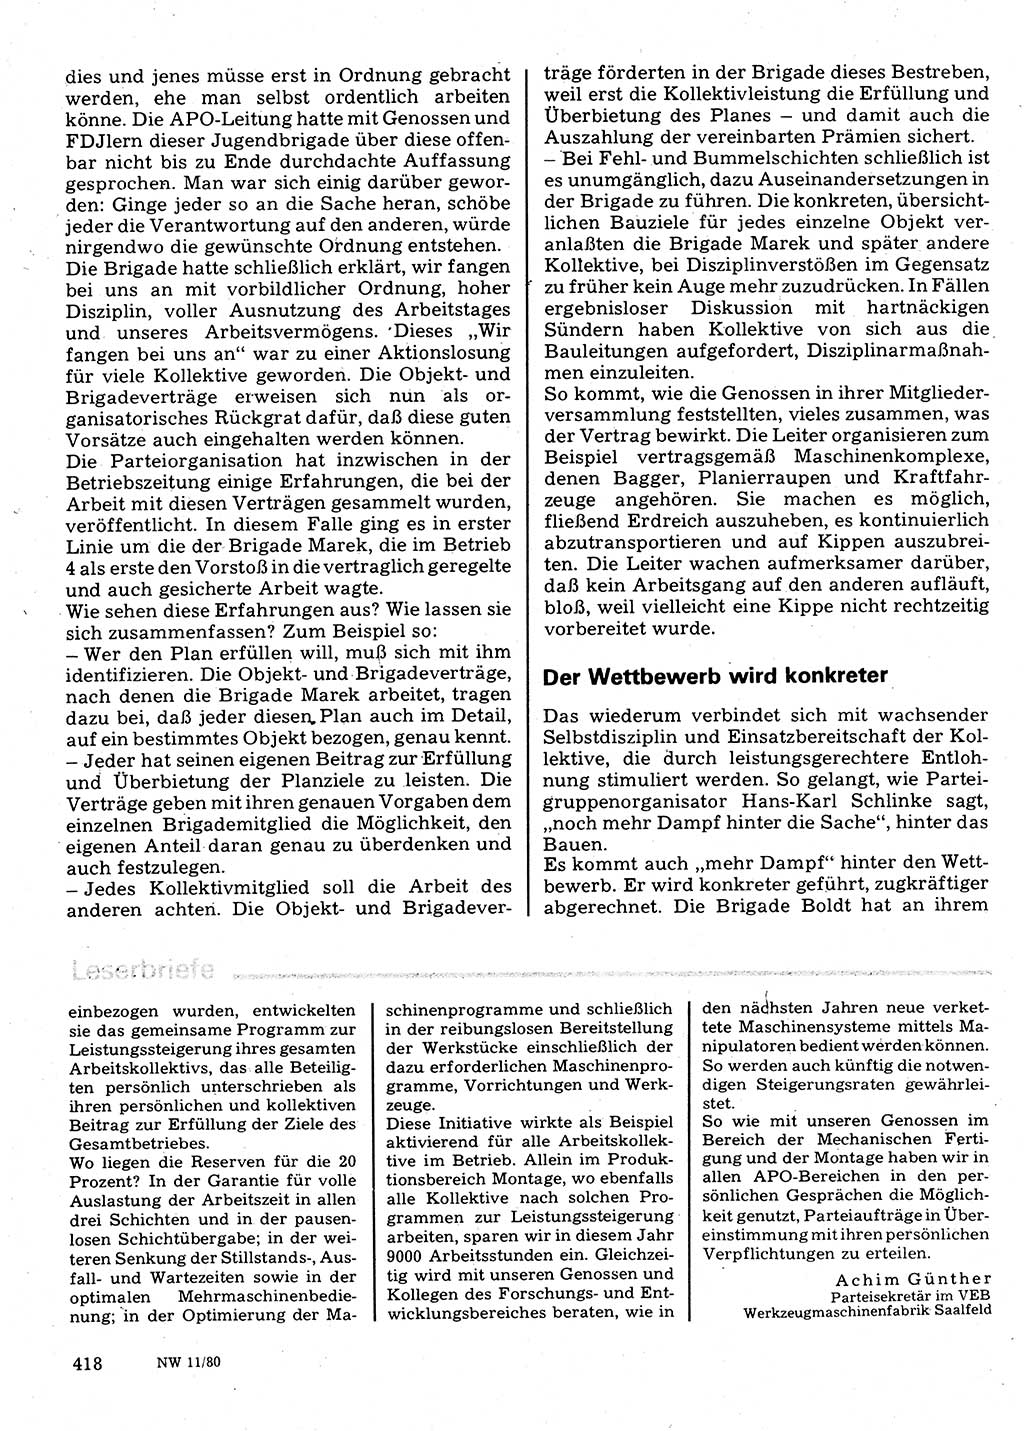 Neuer Weg (NW), Organ des Zentralkomitees (ZK) der SED (Sozialistische Einheitspartei Deutschlands) für Fragen des Parteilebens, 35. Jahrgang [Deutsche Demokratische Republik (DDR)] 1980, Seite 418 (NW ZK SED DDR 1980, S. 418)